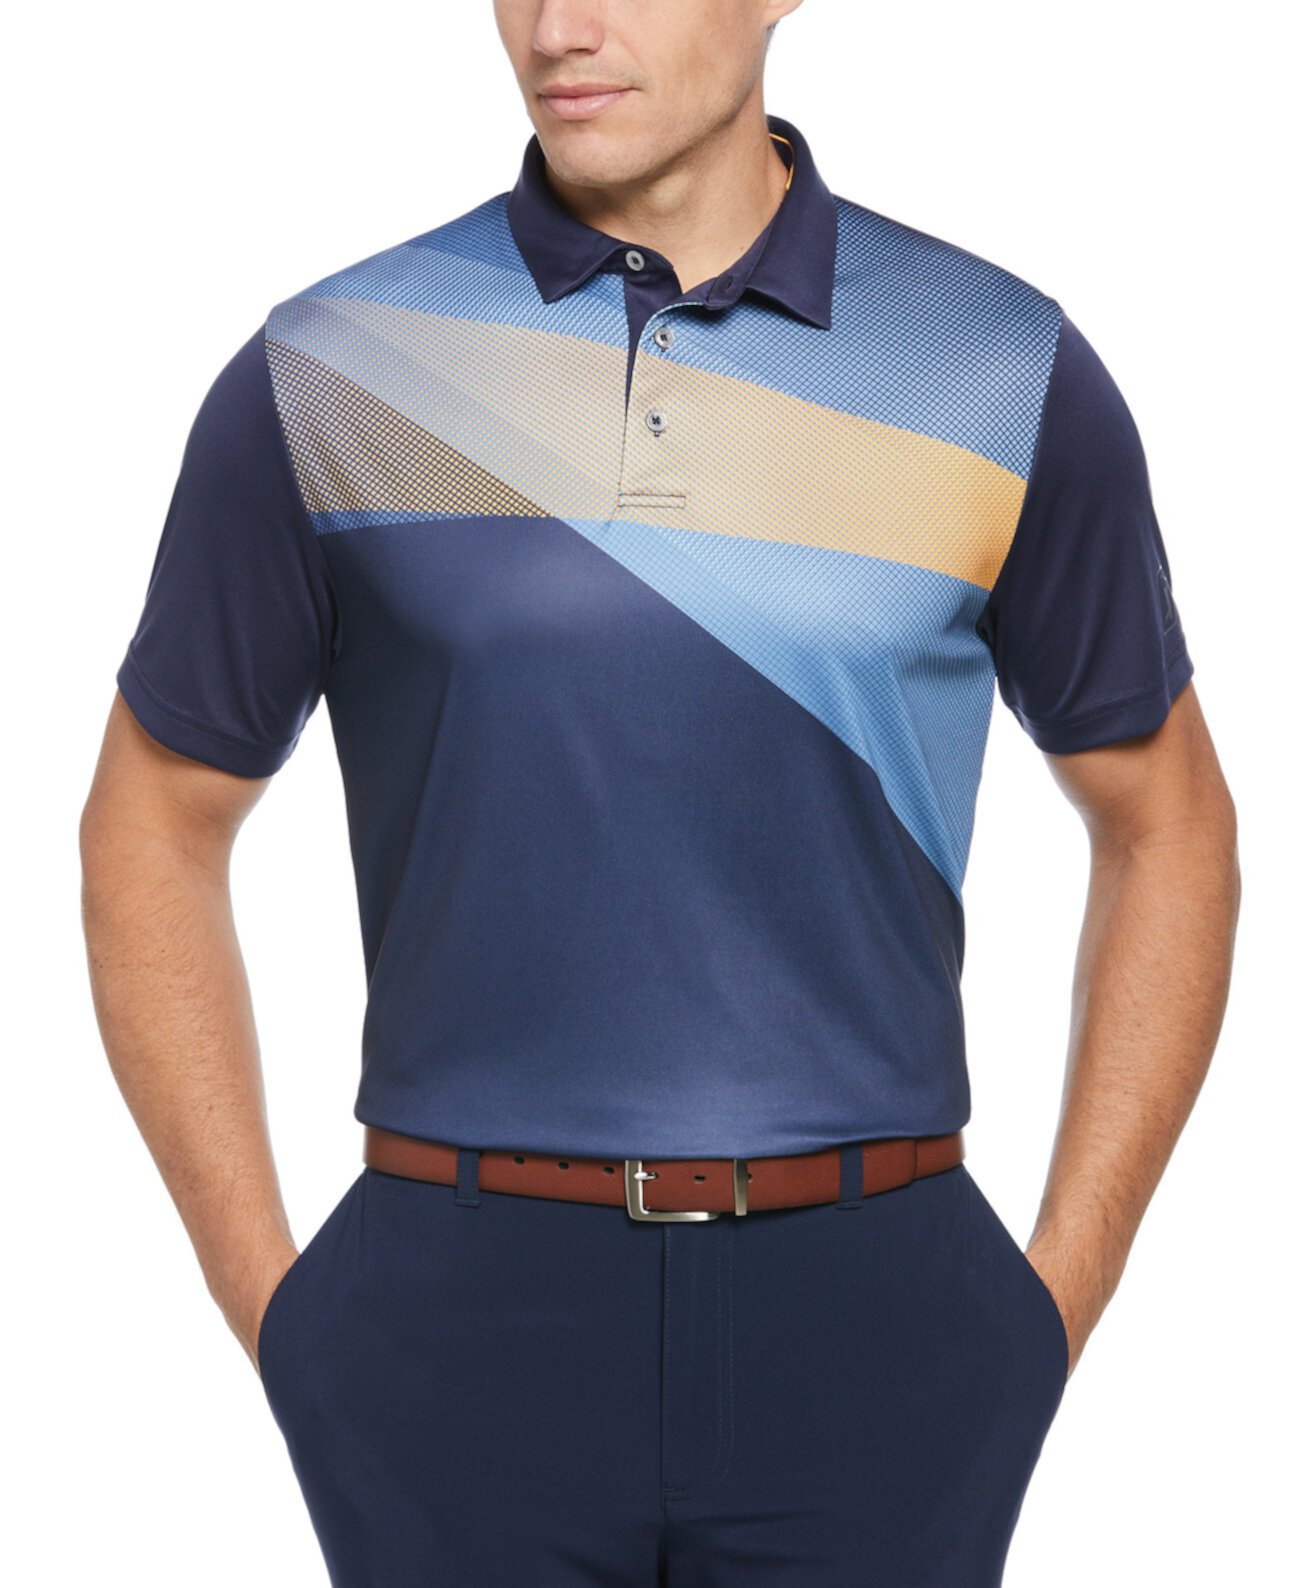 Мужская рубашка-поло для гольфа с короткими рукавами и асимметричным принтом в спортивном стиле Shadow PGA TOUR